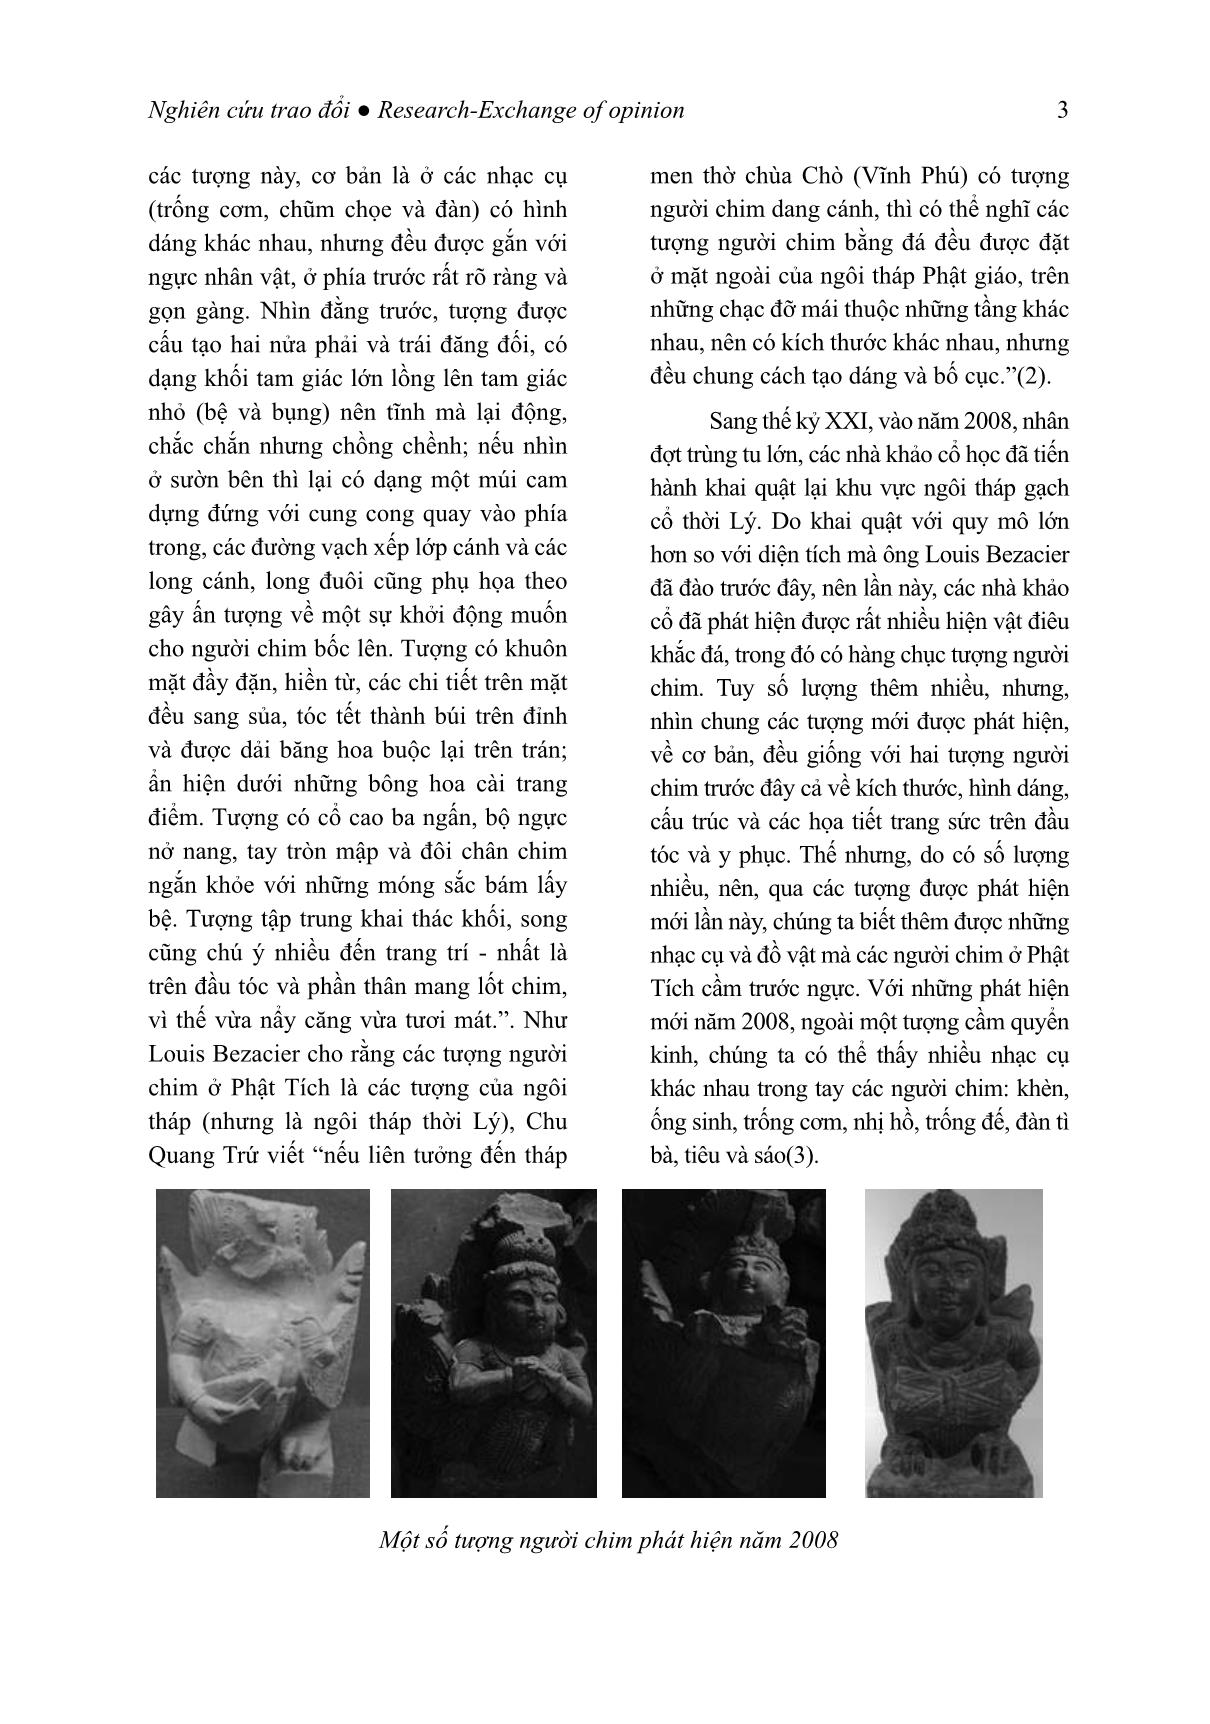 Phong cách tượng người chim chùa Phật Tích trang 3